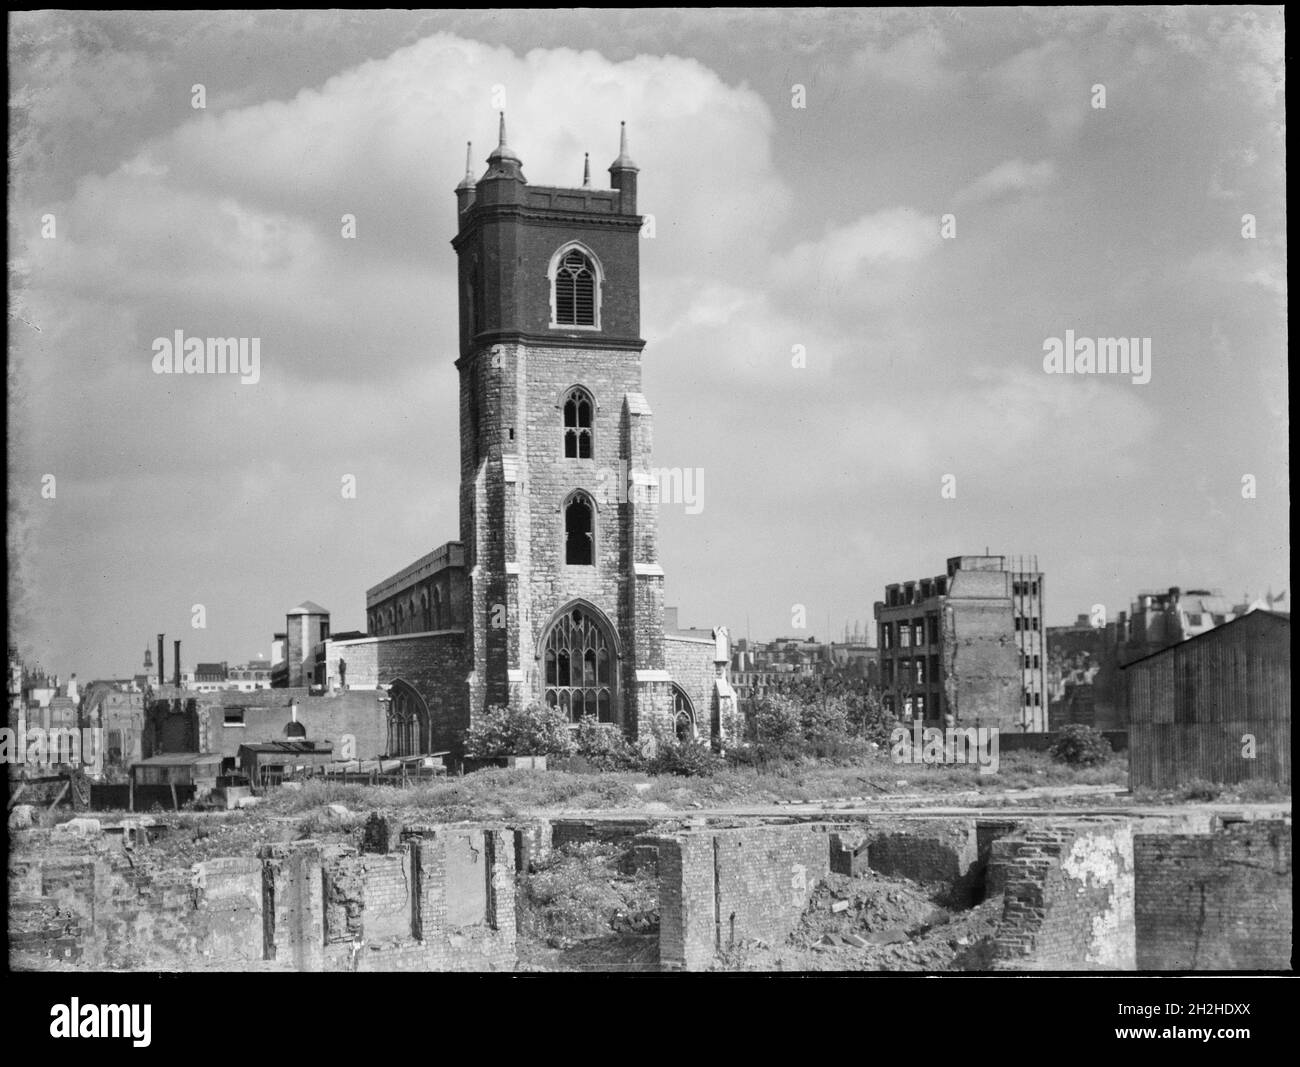 St Giles' Cripplegate, Fore Street, Ciudad y Condado de la Ciudad de Londres, Gran Autoridad de Londres, 1941-1945. Una vista hacia el sudeste a través de una bomba dañó el paisaje hacia la Iglesia de San Giles' Cripplegate. La Iglesia de San Giles fue gravemente dañada durante el Blitz en 1941 y la zona cercana a ella fue casi completamente destruida por los bombardeos. La iglesia fue reconstruida en el 1950s y ahora se encuentra en el centro de la finca Barbican. Foto de stock